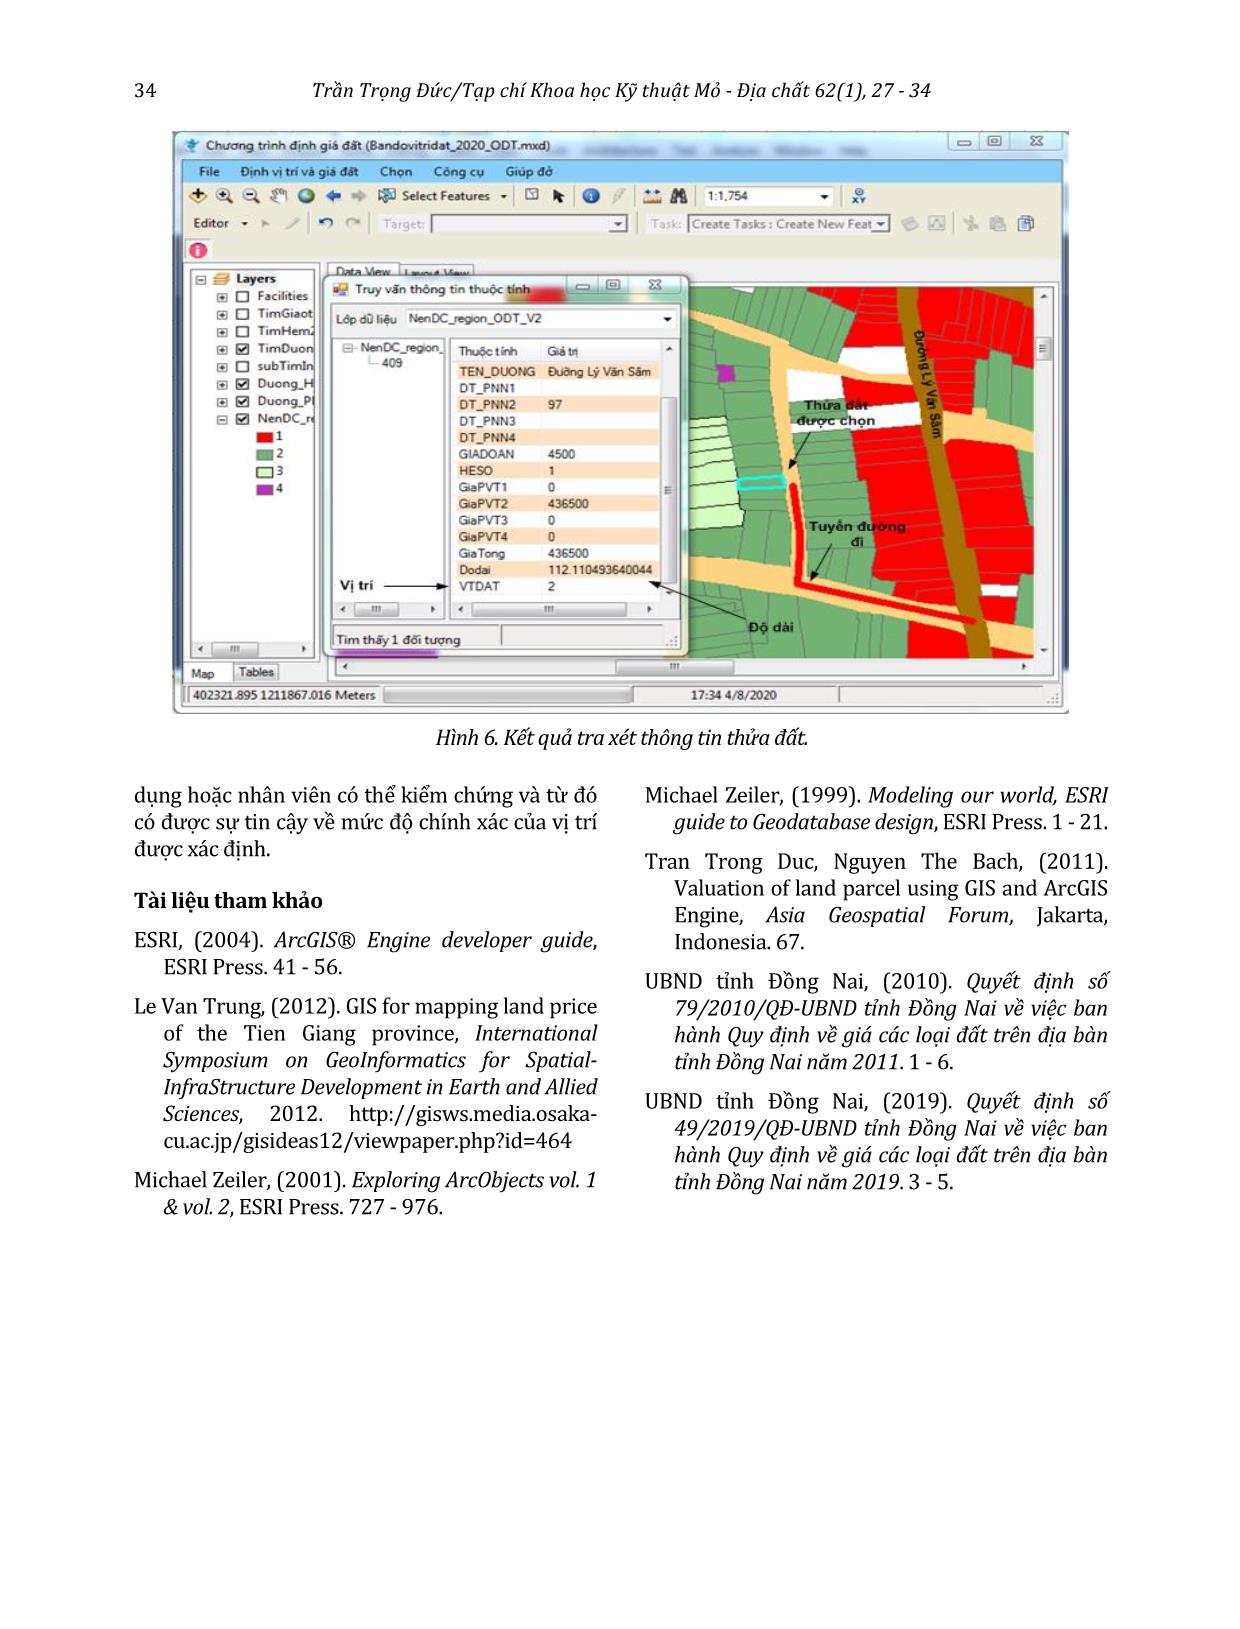 Định vị trí và giá cho từng thửa đất sử dụng ArcGIS Engine trang 8